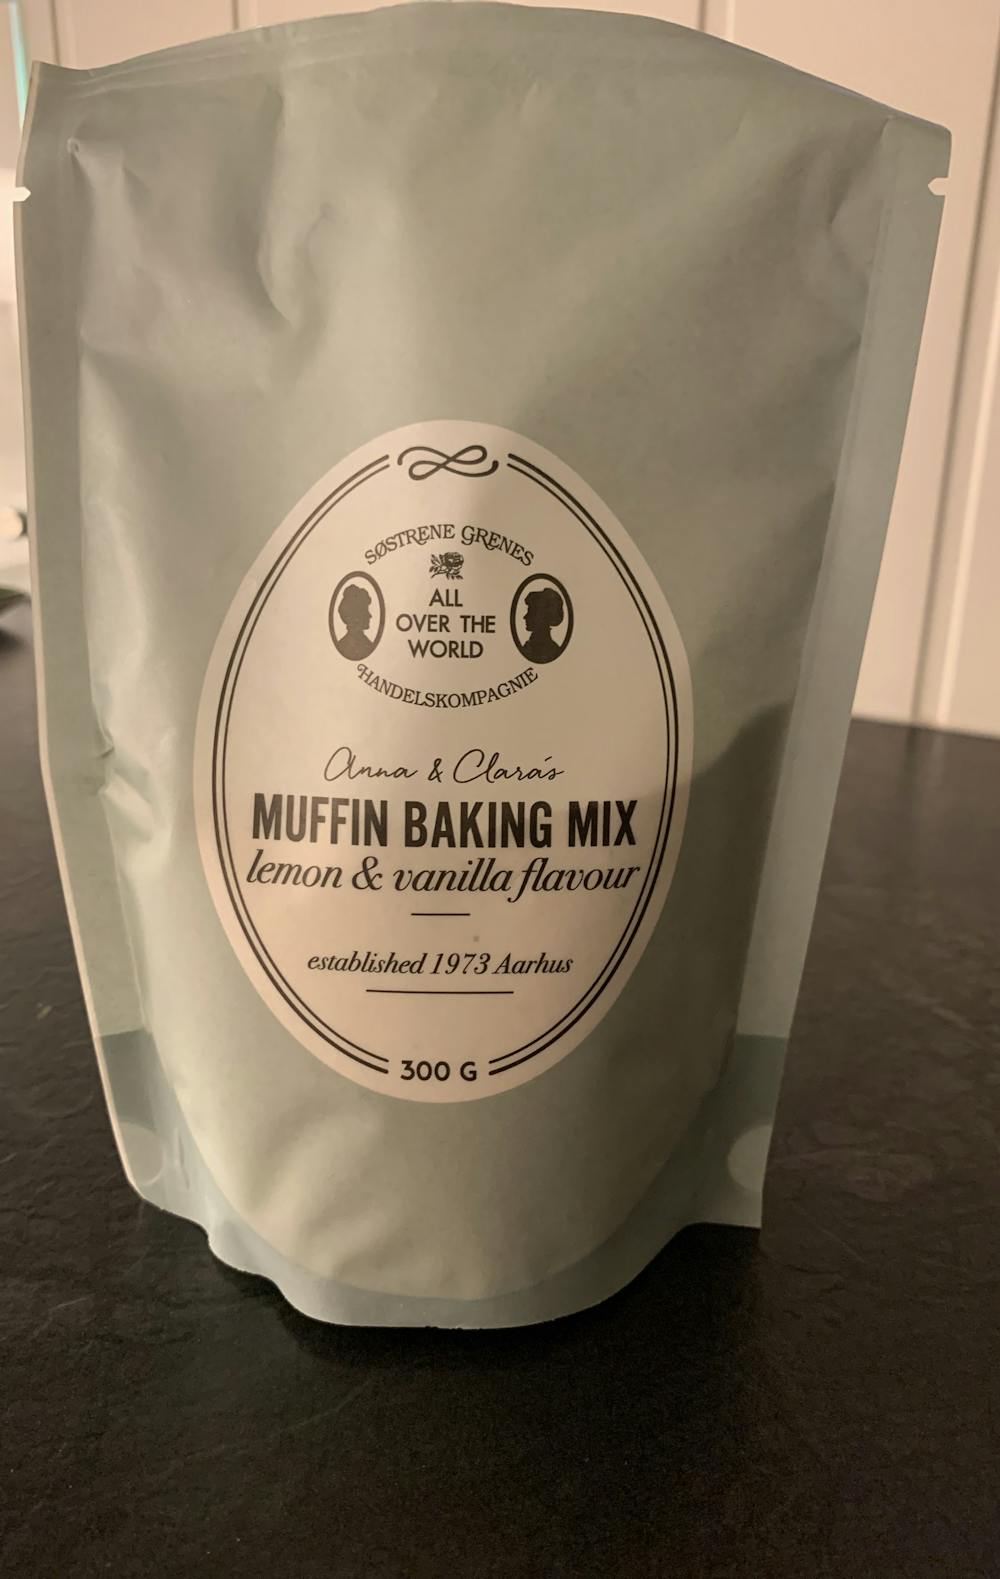 Muffin baking mix, Søstrene Grene